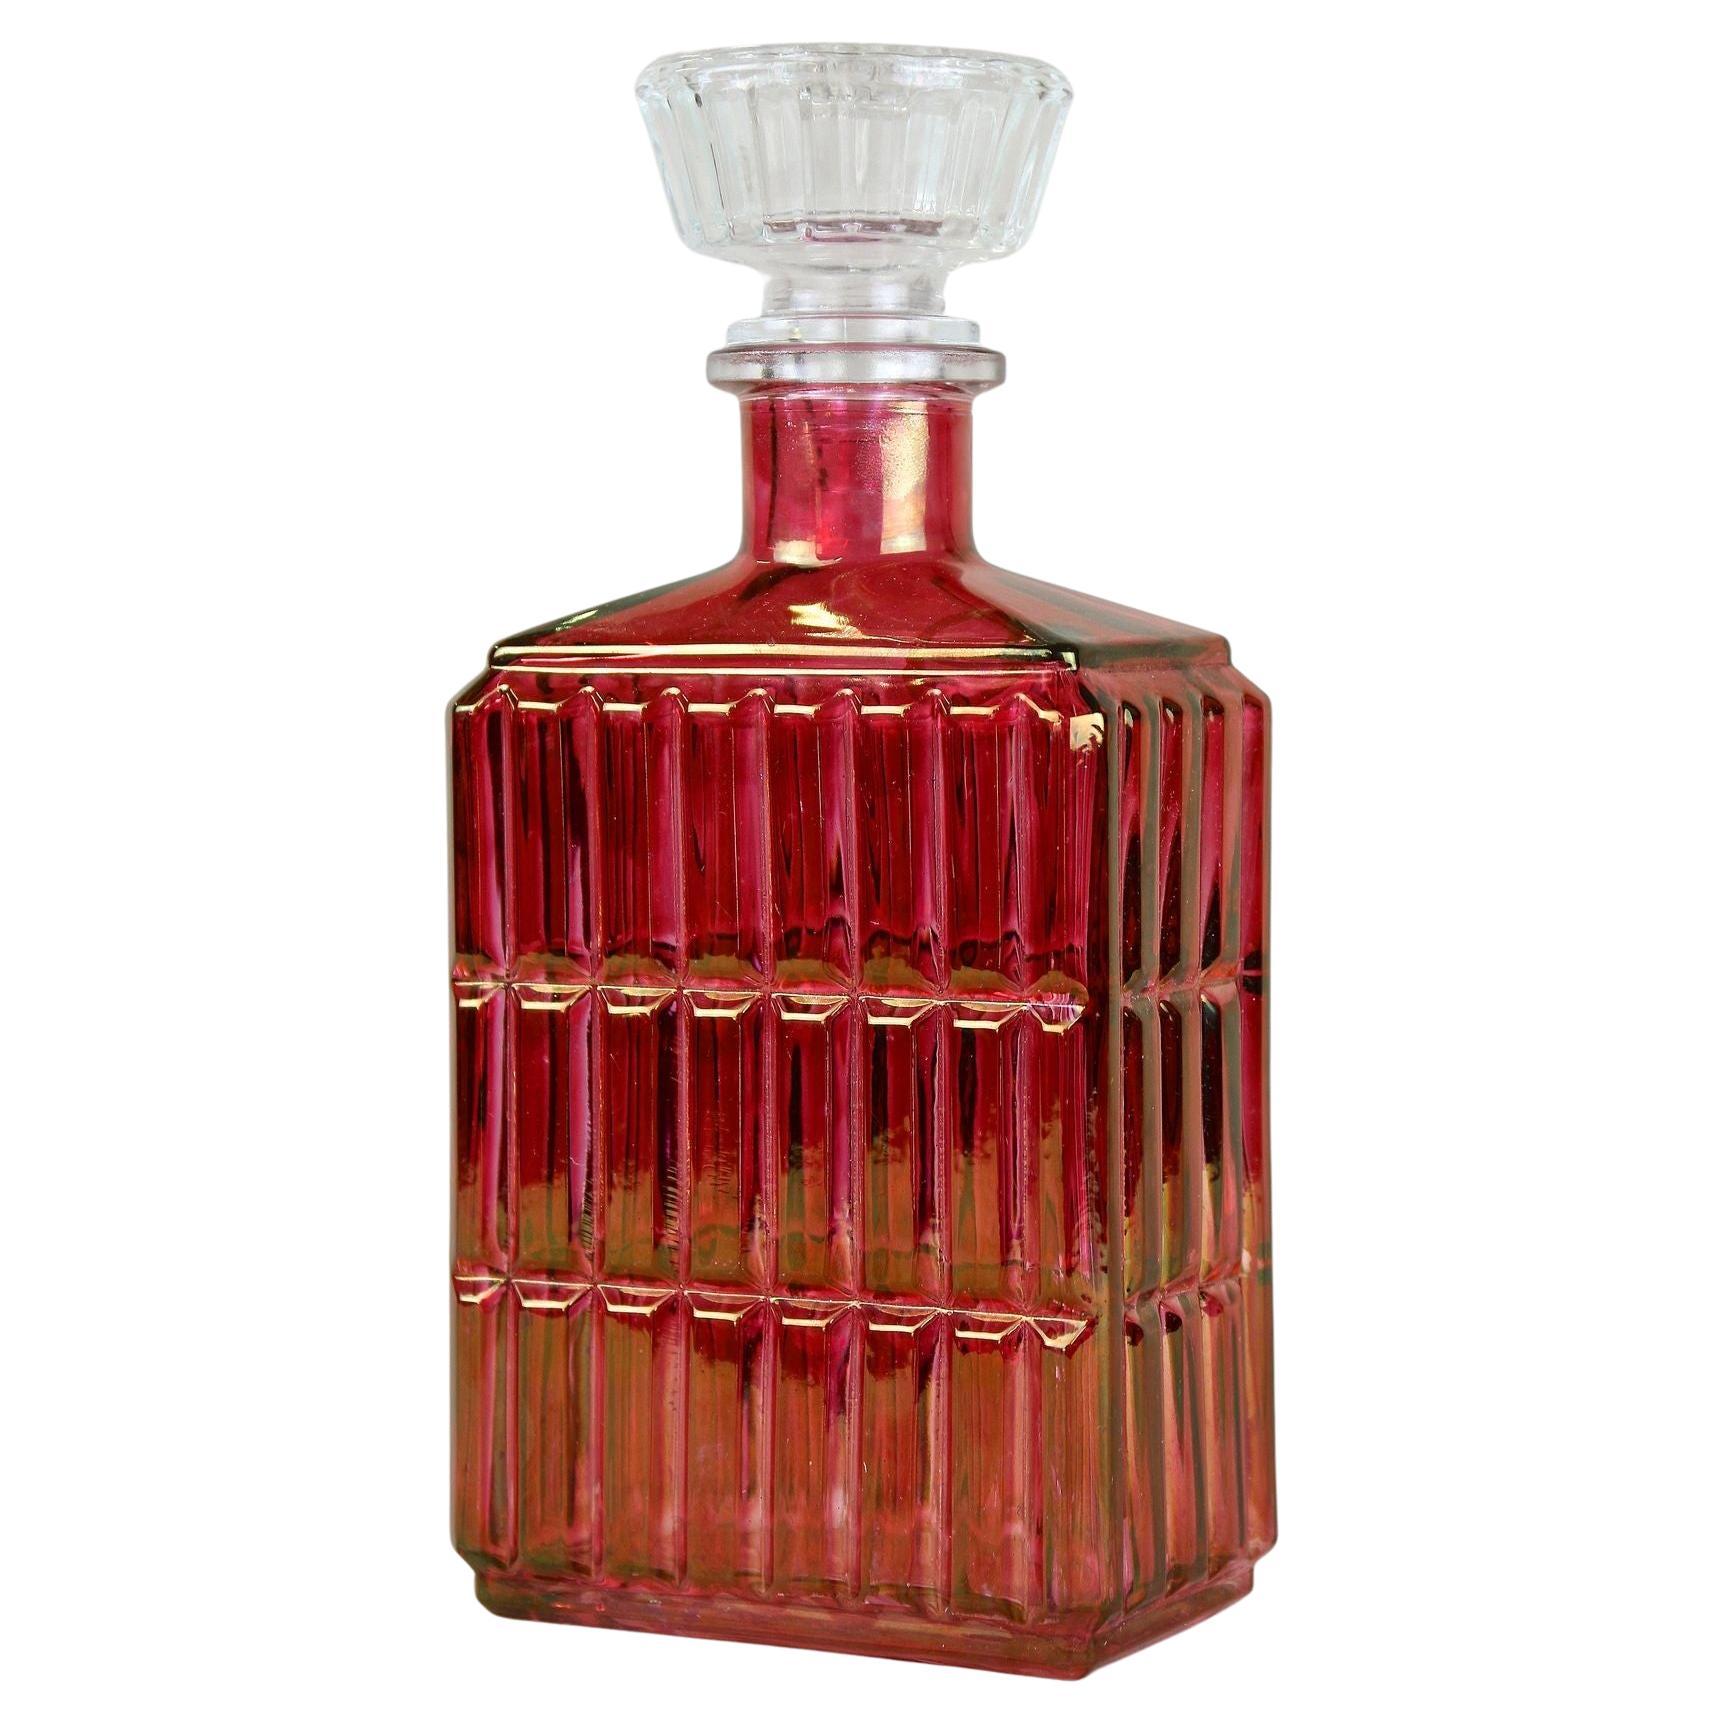 Carafe/boîte à liqueur Art Déco, rouge/or irisé, Autriche vers 1930